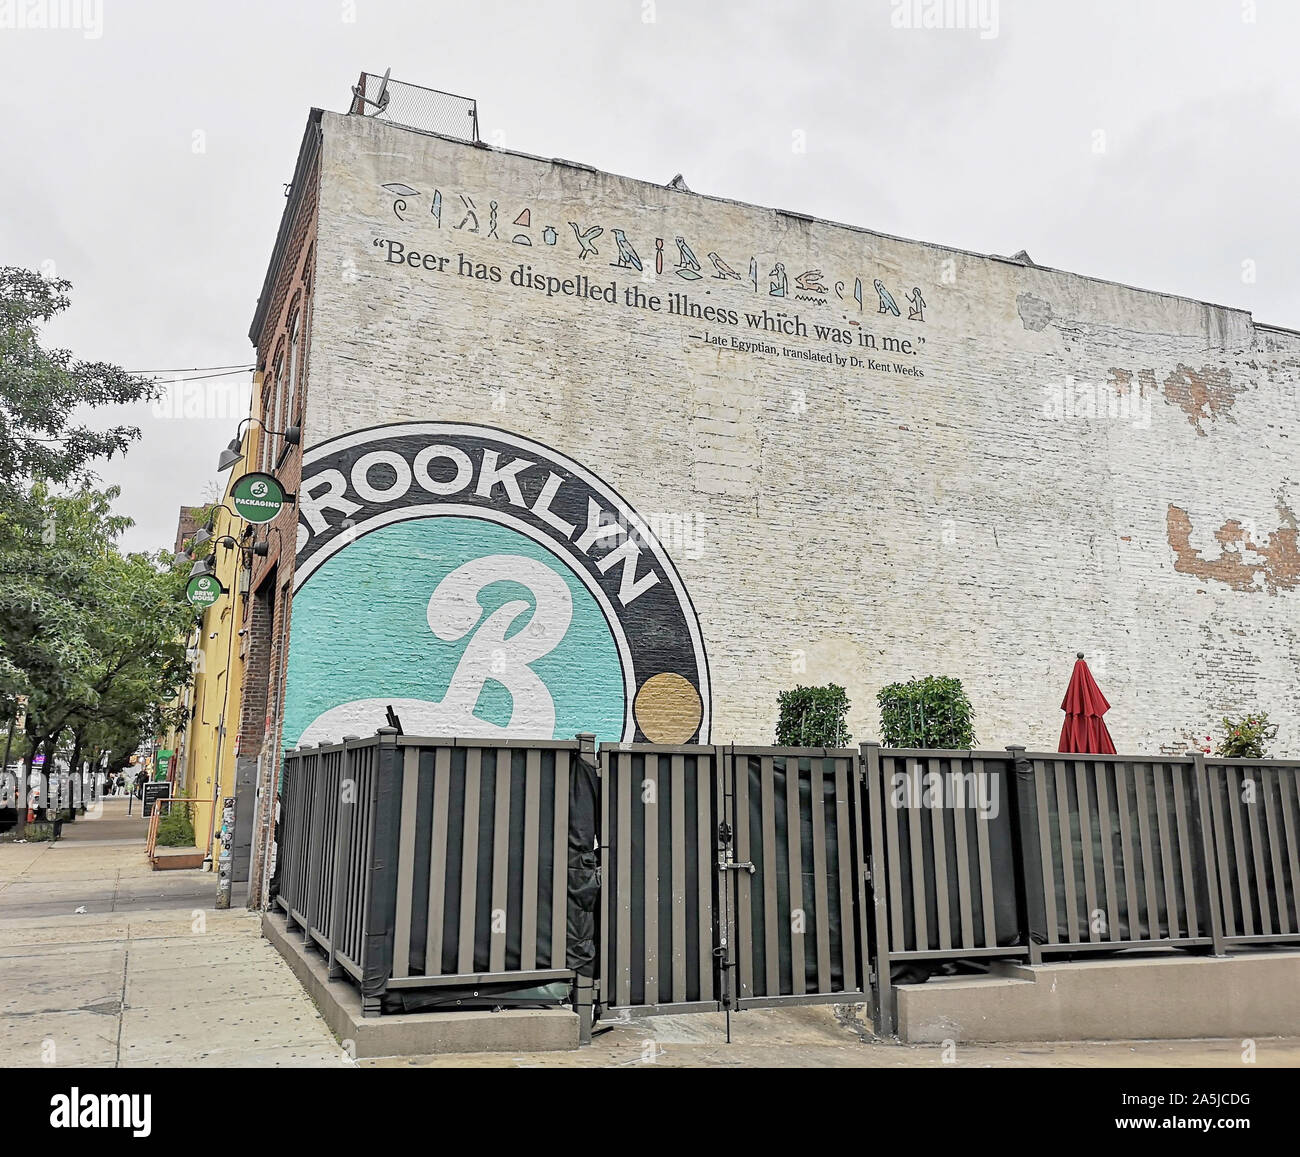 Nueva York, Estados Unidos. 12 Sep, 2019. El logotipo de Brooklyn Brewery está pintado en la fachada de la cervecería. La cervecería Brooklyn en el distrito del mismo nombre, fue fundada en 1988. La Brooklyn Brewery logotipo fue creado por el diseñador gráfico Milton Glaser, quien también diseñó el 'I love NY' logo. Crédito: Alexandra Schuler/dpa/Alamy Live News Foto de stock